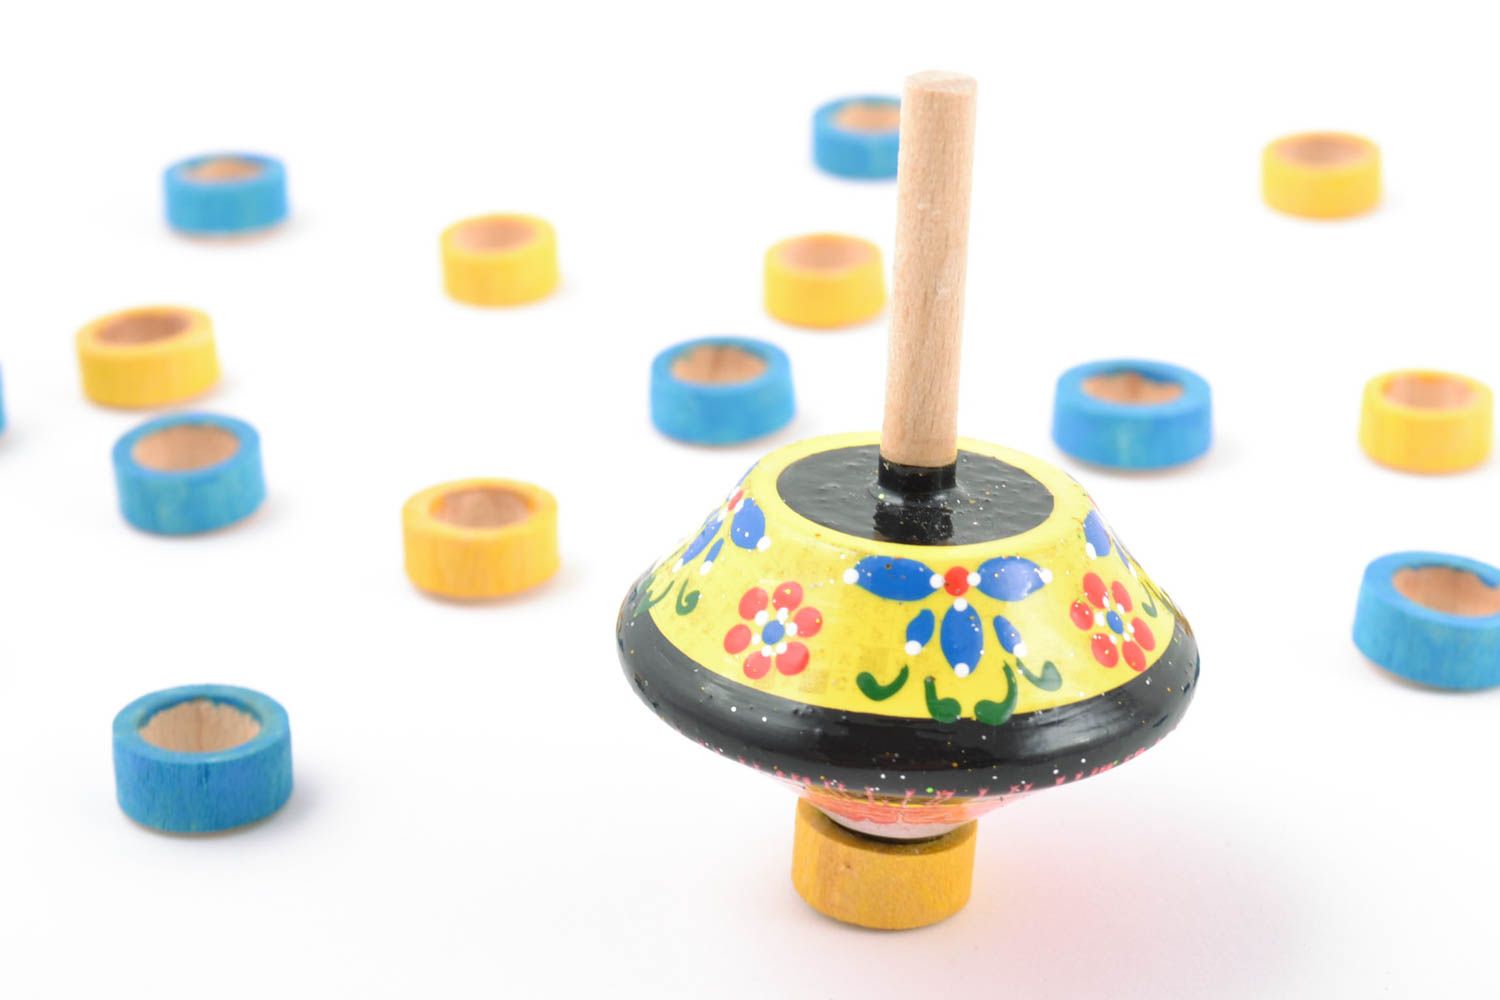 Развивающая игрушка юла маленького размера цветная расписная детская хэнд мейд  фото 1